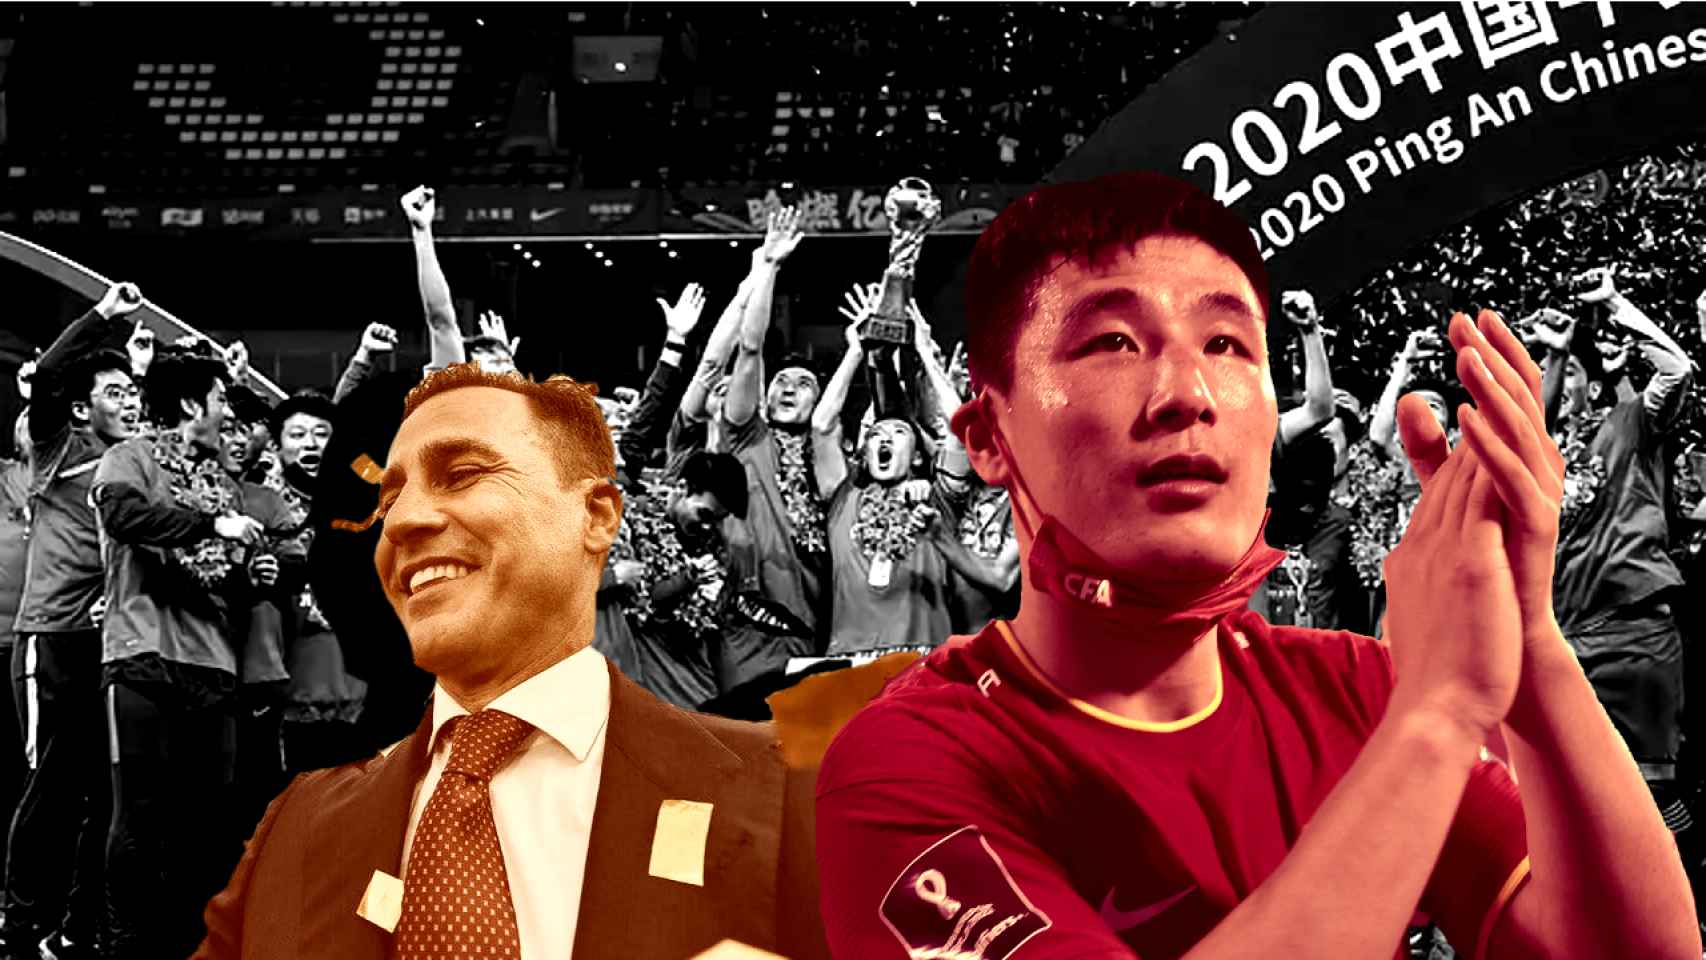 La bancarrota del fútbol en China: impagos, sin estrellas y una liga sin  interés para el gobierno